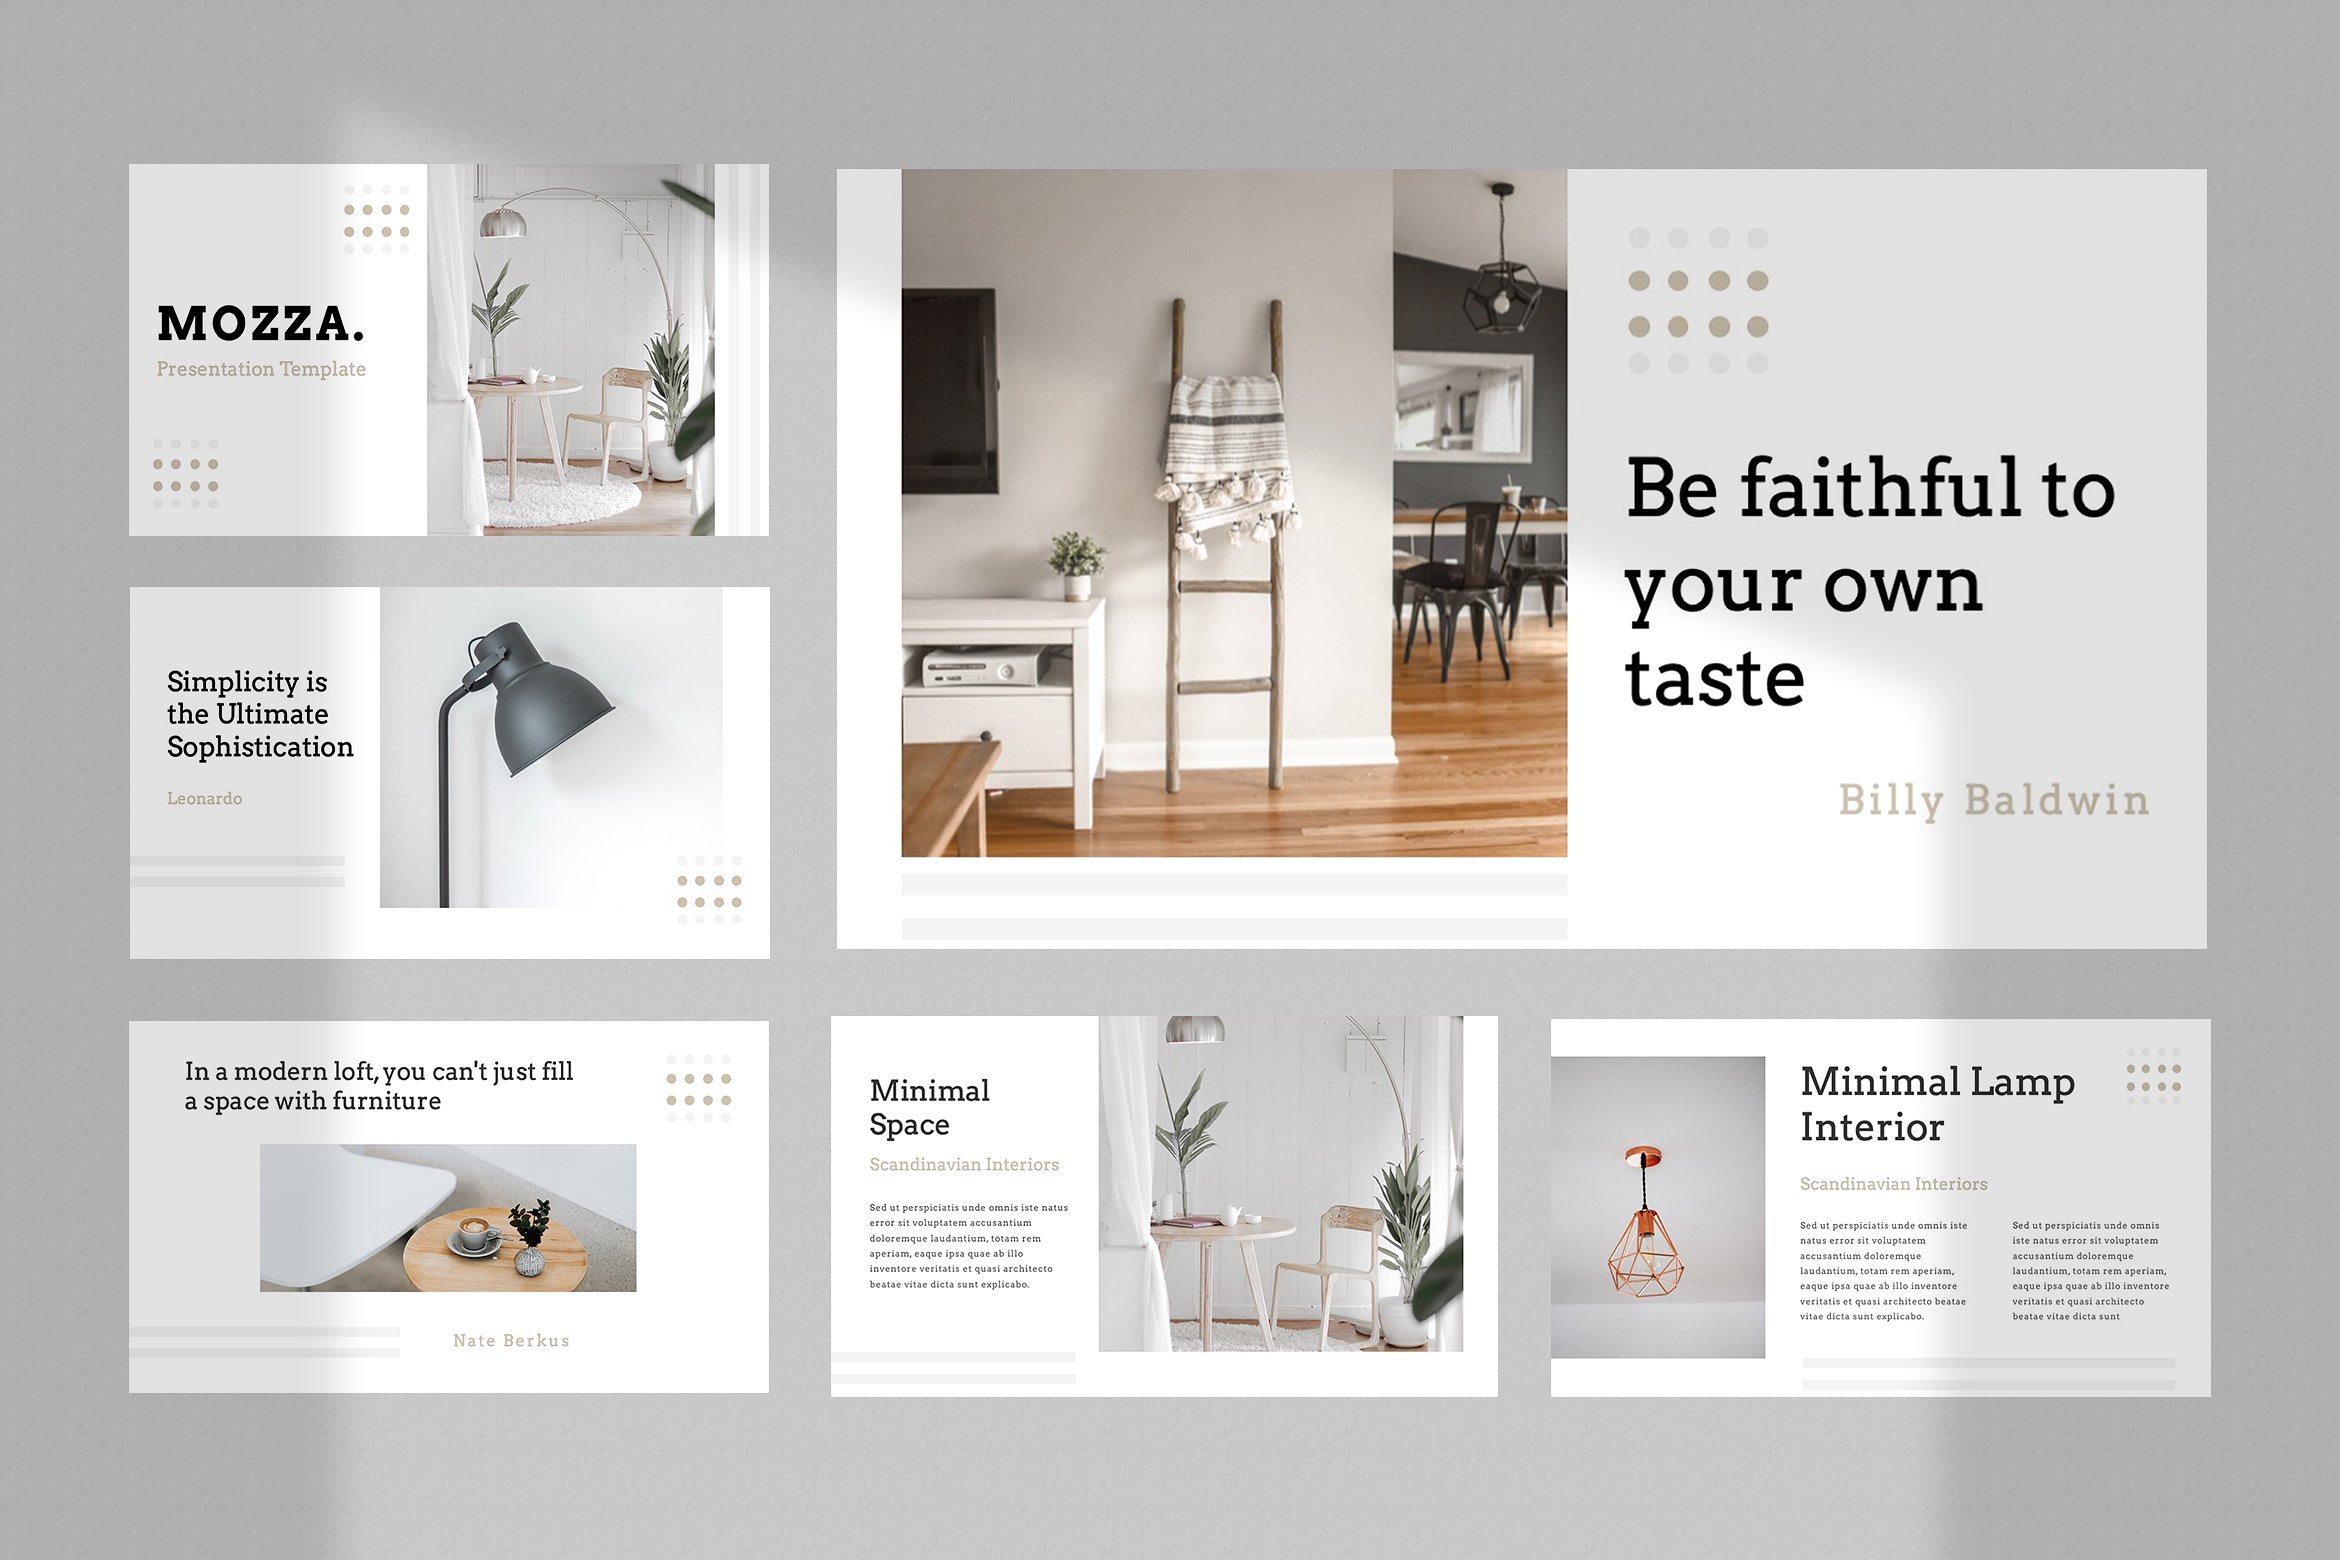 现代简约室内家居设计作品演示幻灯片模板  Modern Minimalist Interior Home Design Work Presentation Slide Template插图1